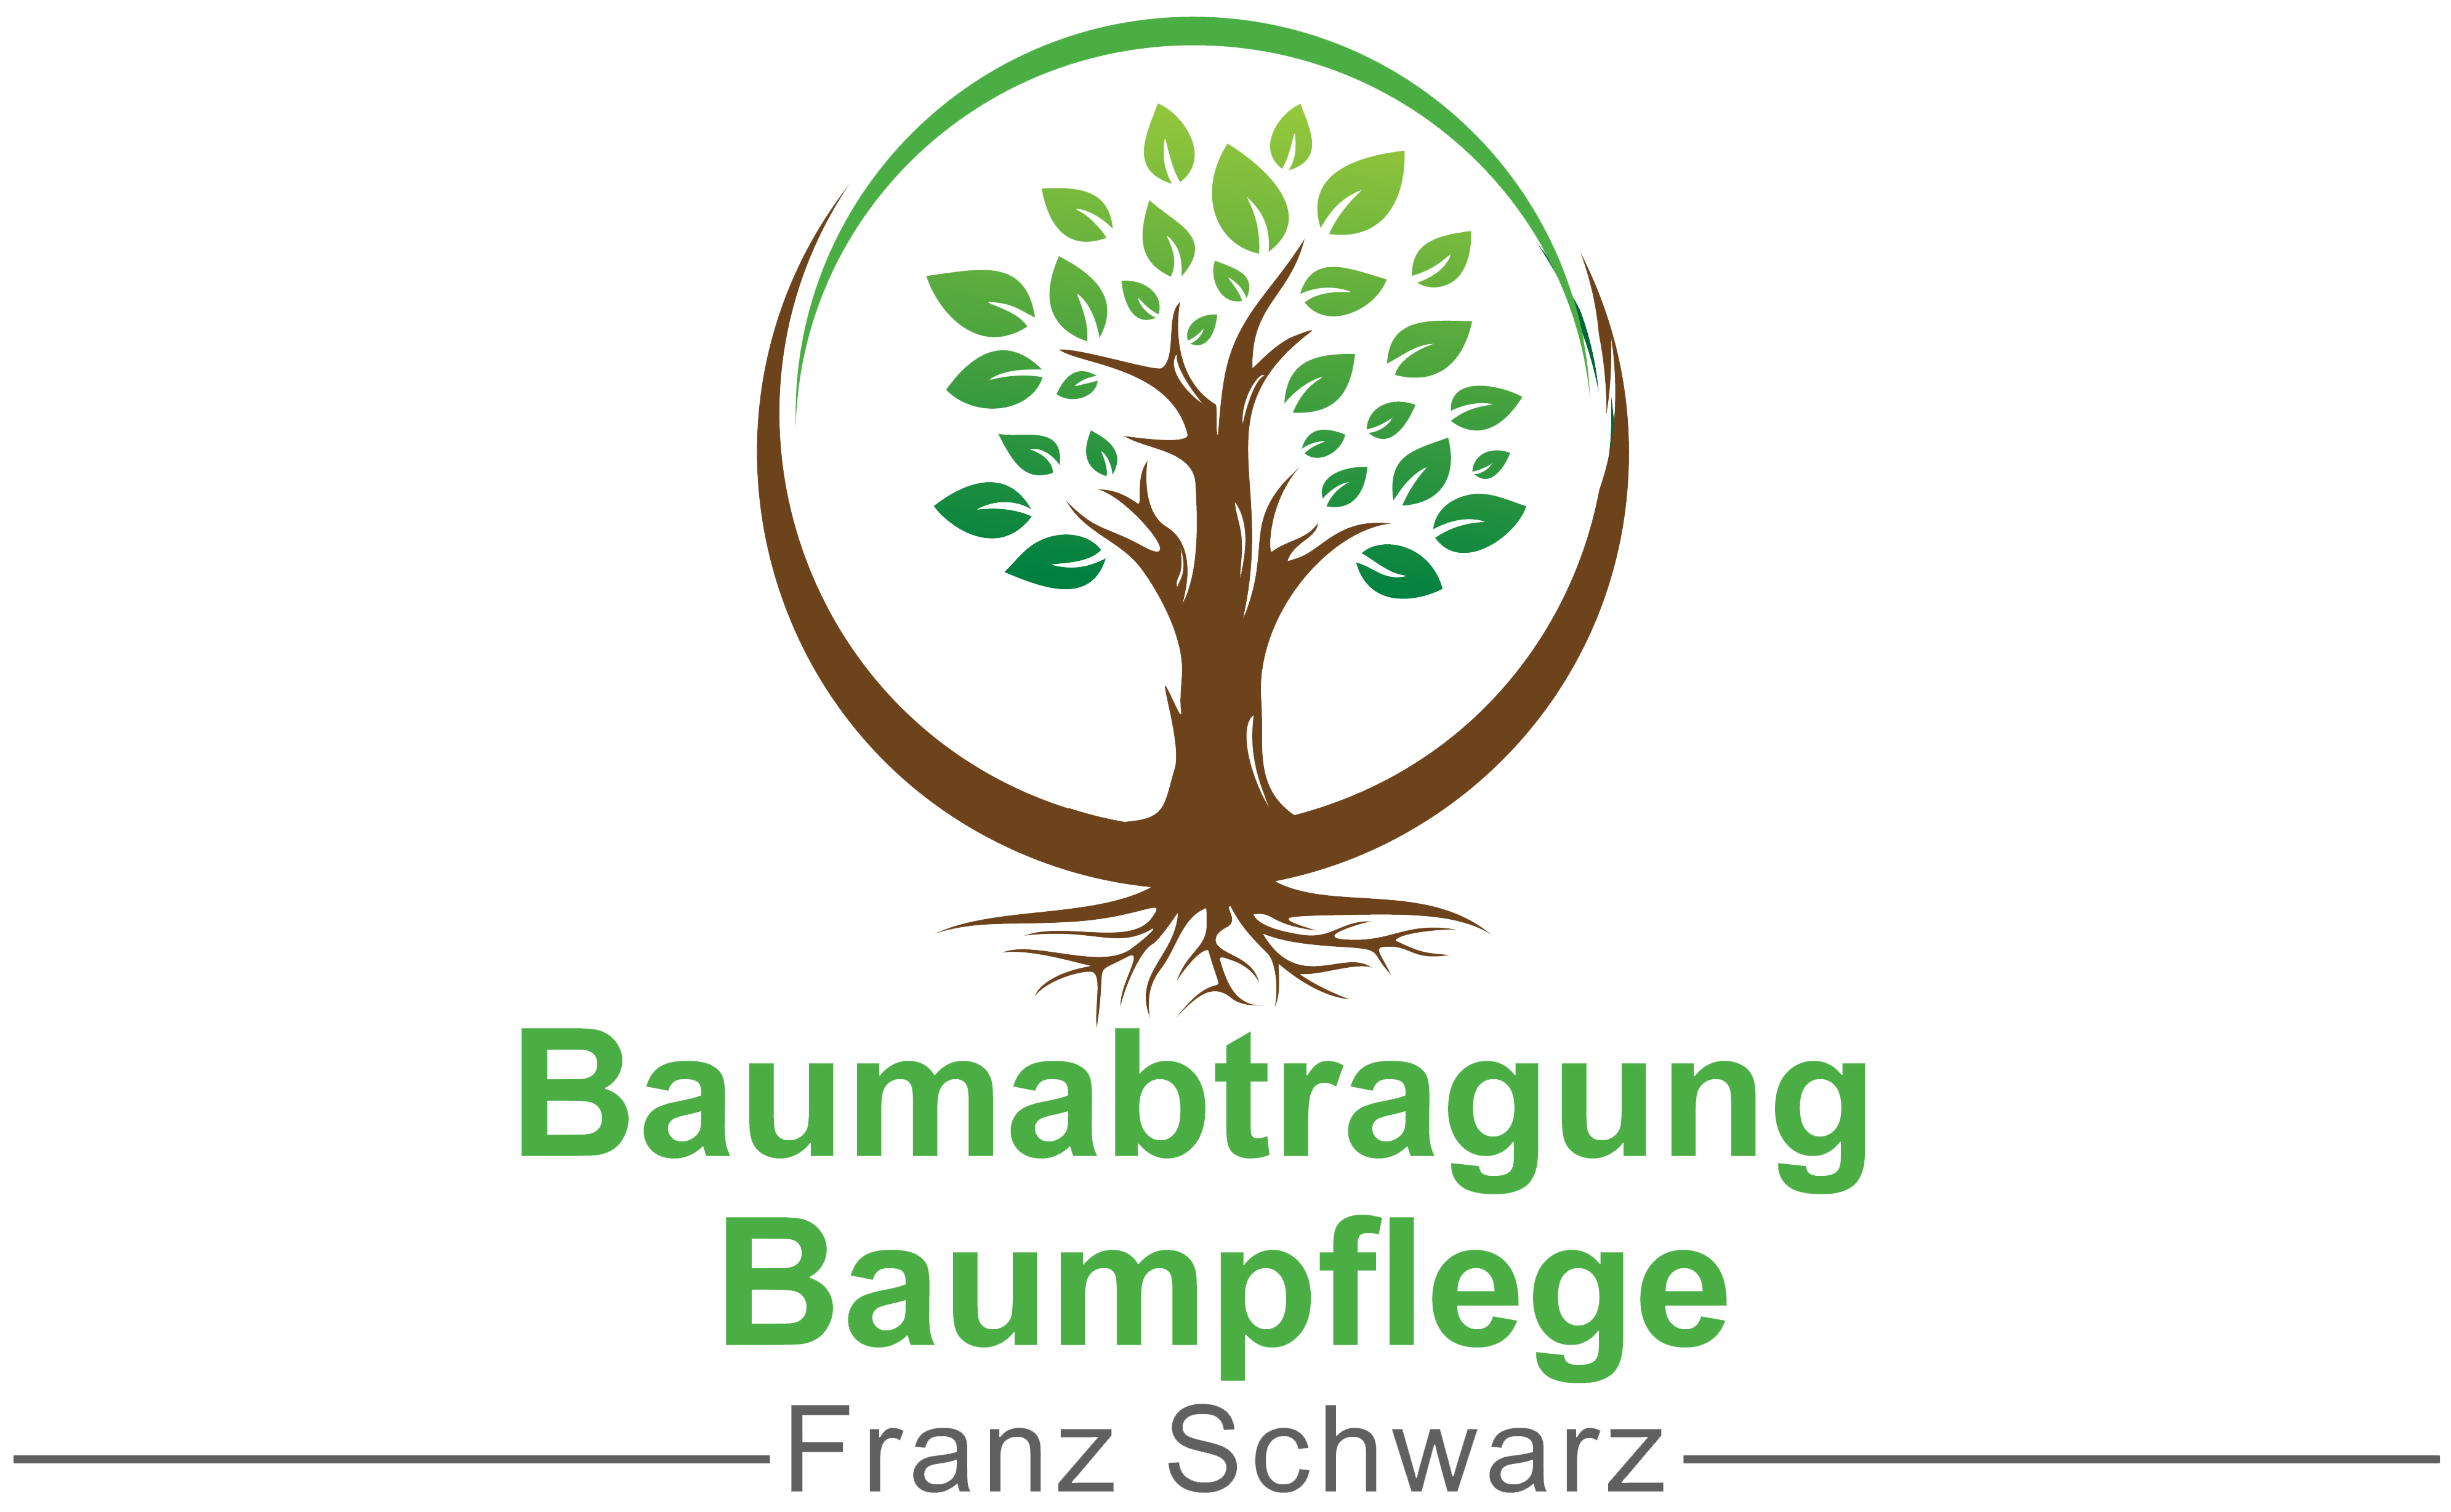 Baumabtragung Franz Schwarz